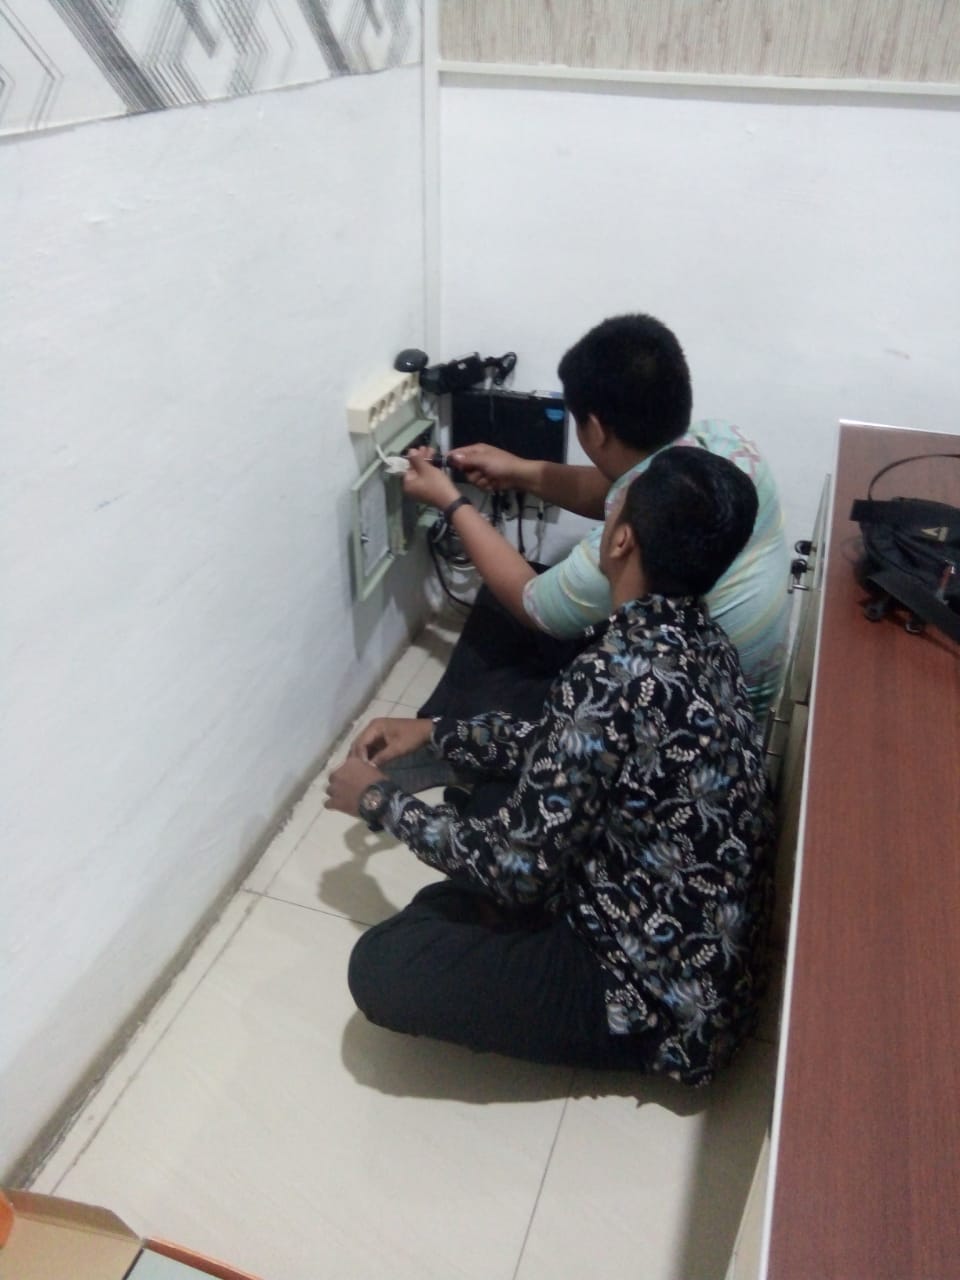 PENGGANTIAN POWER SUPPLY CCTV DI KECAMATAN KISARAN TIMUR